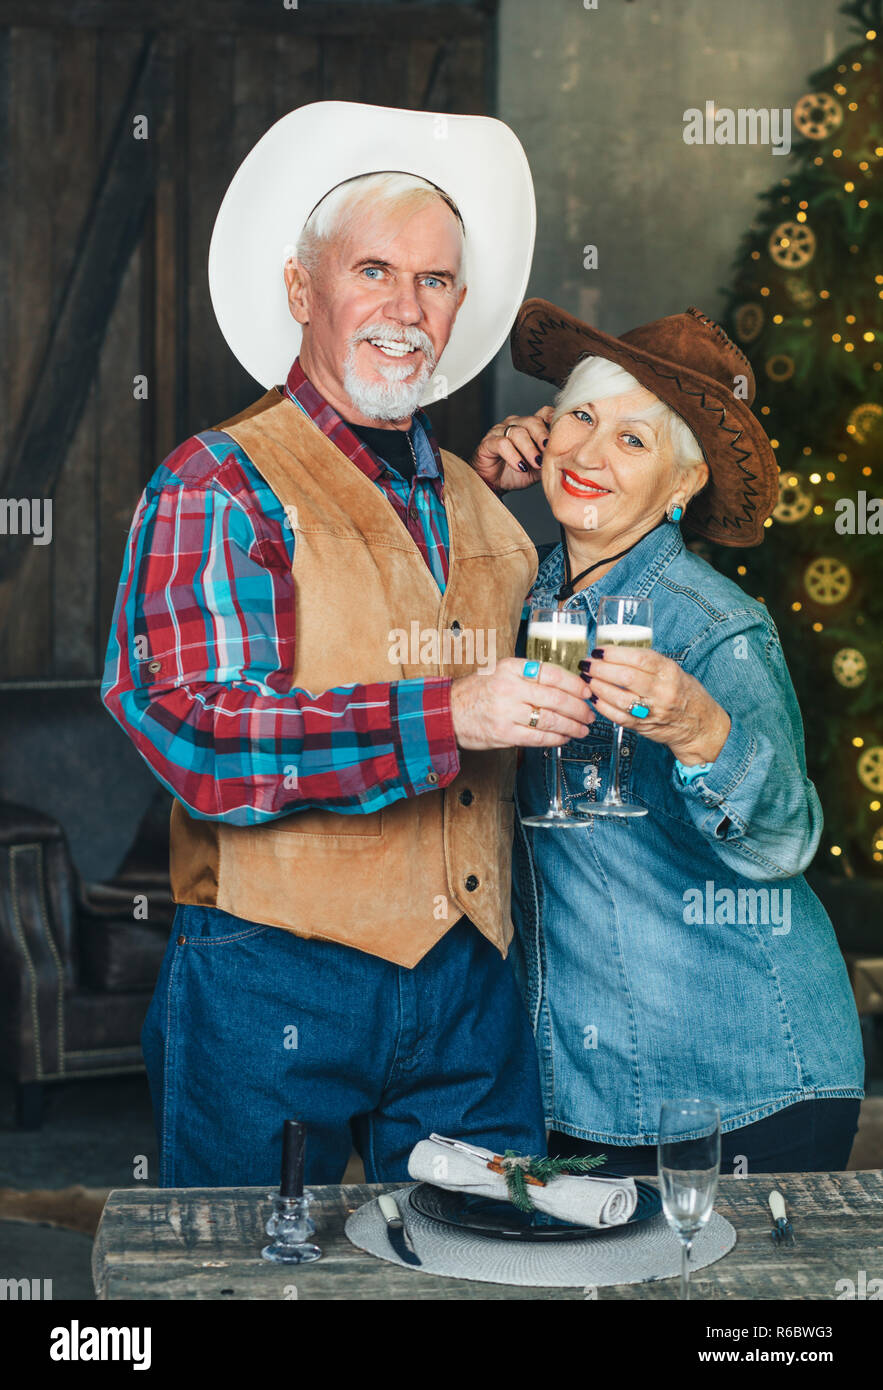 Senior couple célébrant le Nouvel An, avoir champagne, l'éclairage et l'arrière-plan sur l'arbre de Noël Banque D'Images